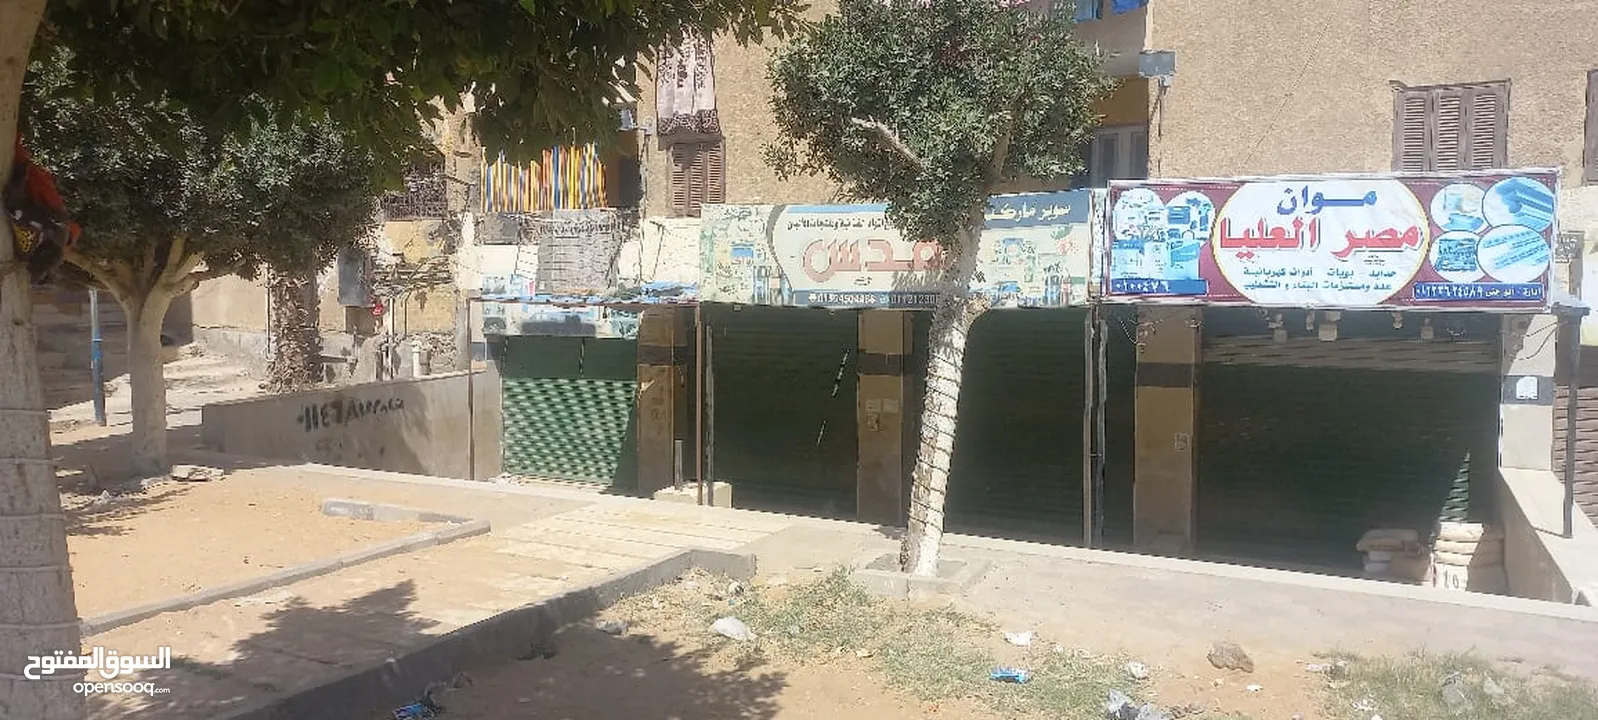 محل للبيع مدينة بدر- شارع مصر العليا بالقرب من جامعه بدر